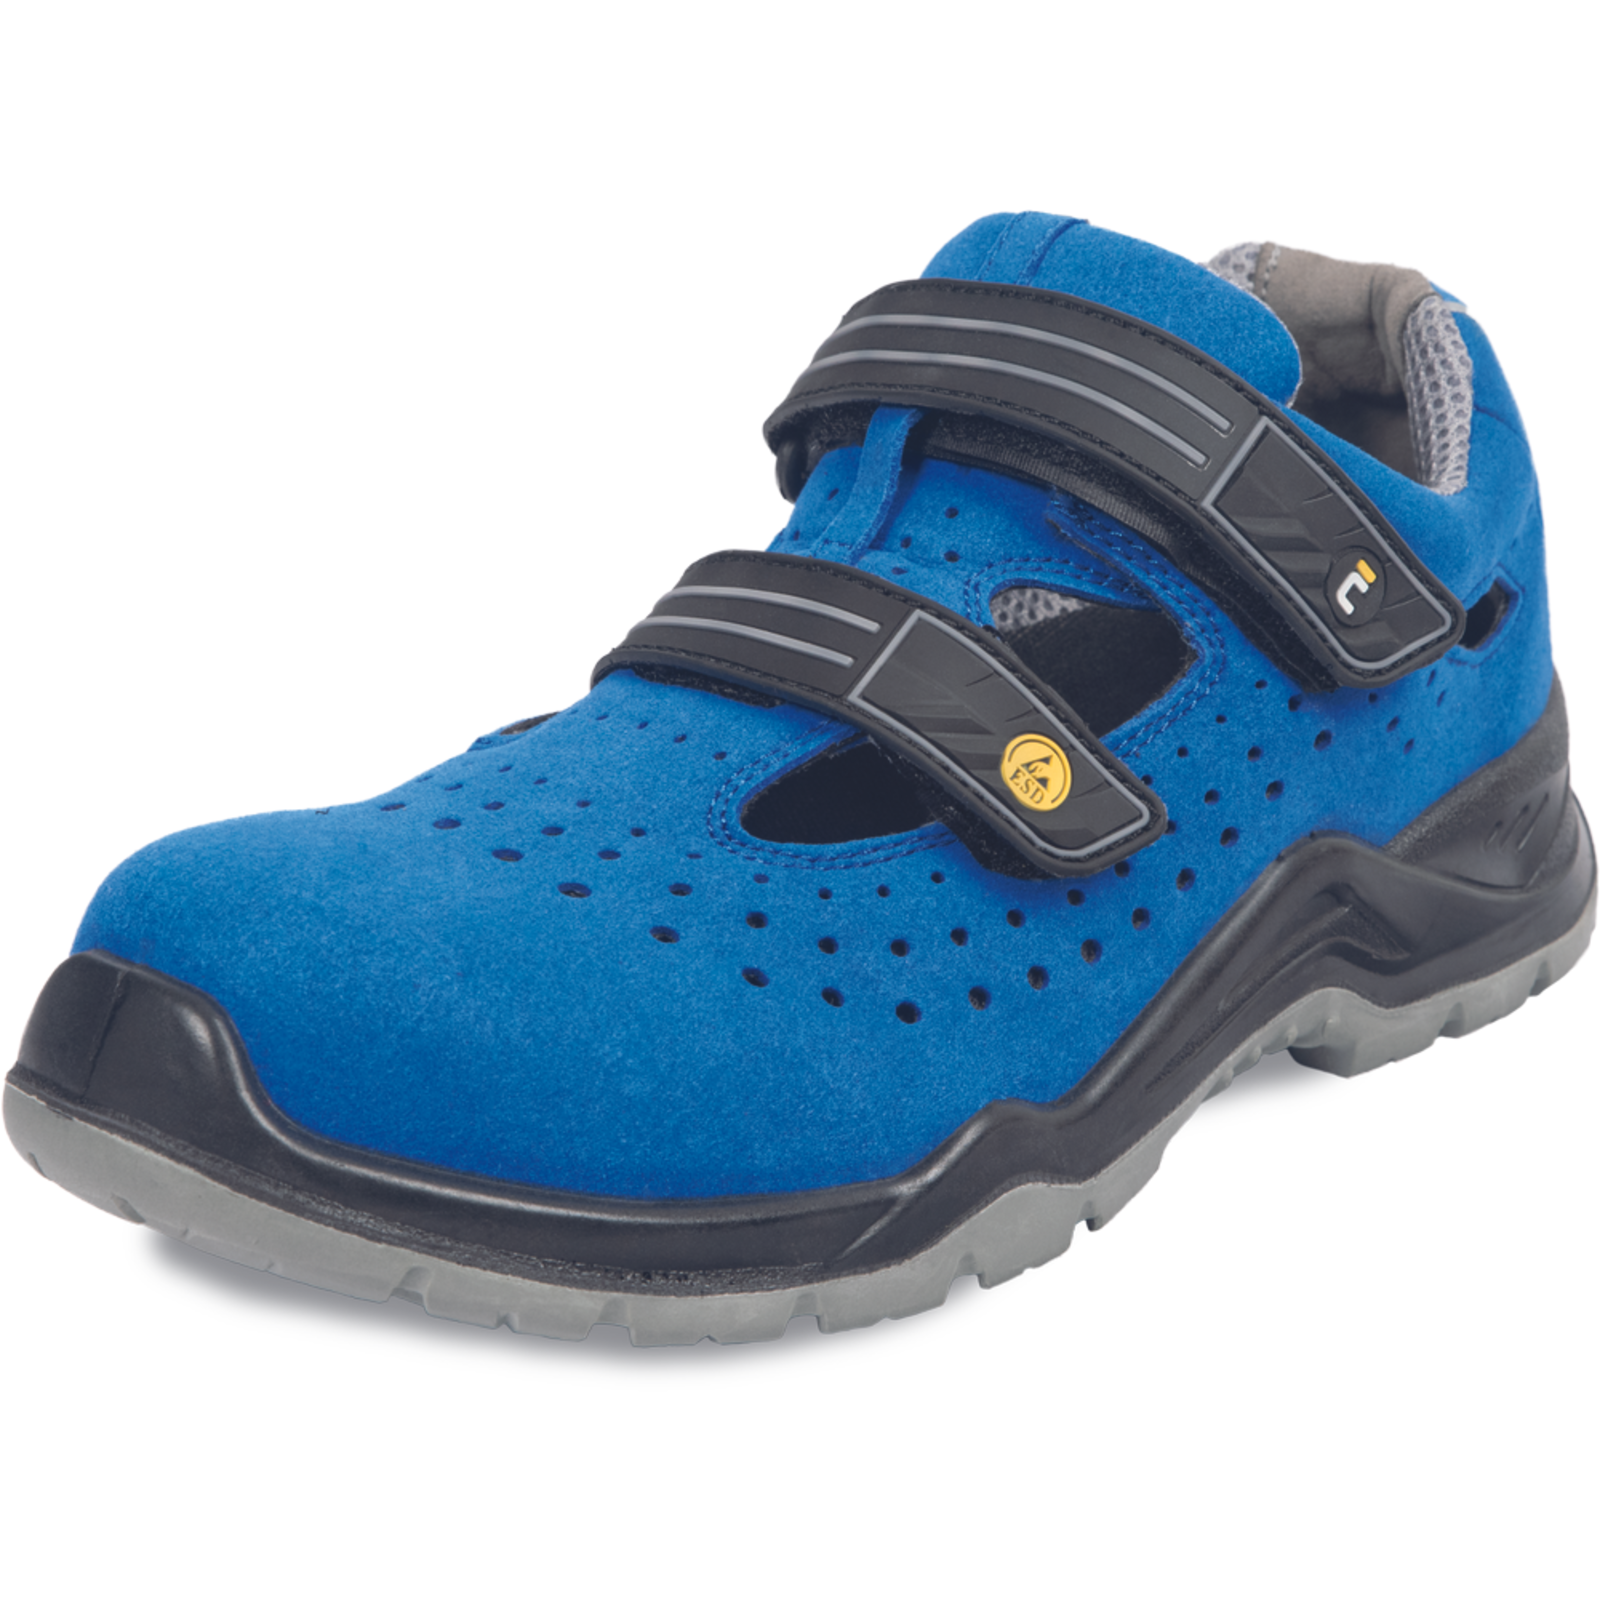 Bezpečnostné pracovné sandále Cerva Hagewill S1P - veľkosť: 41, farba: modrá